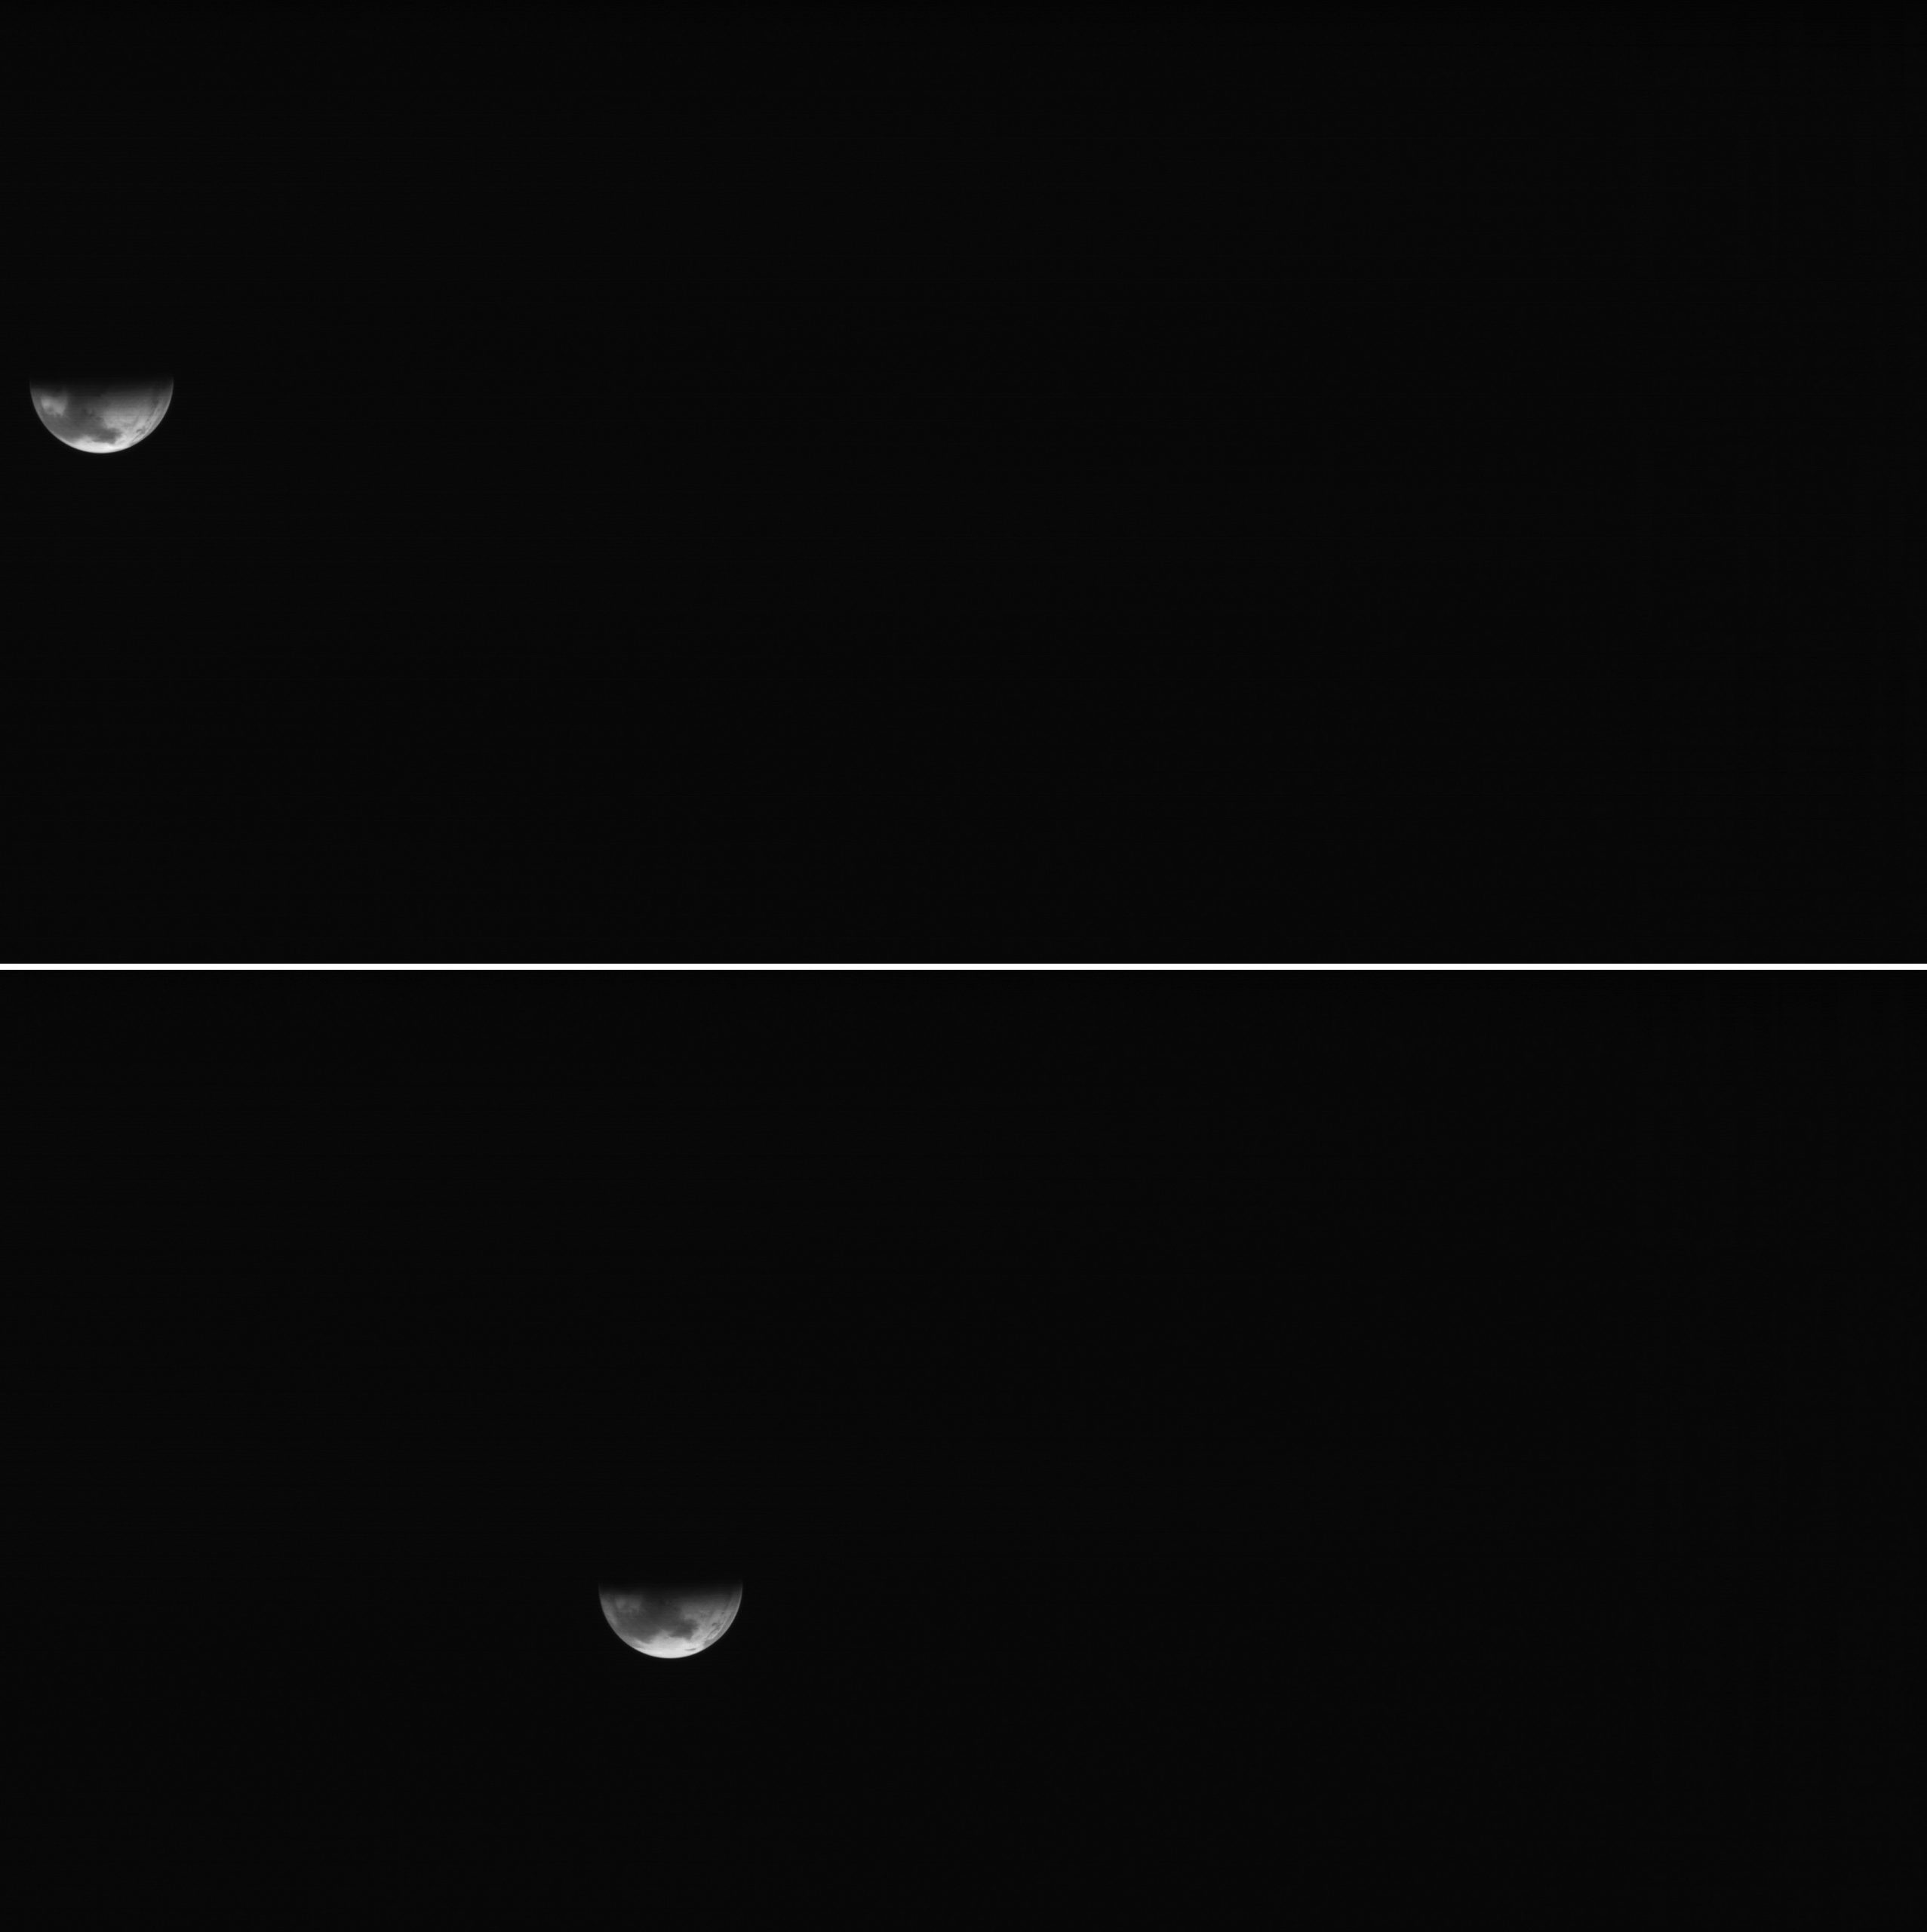 Jedyne obrazy z wąskokątnej (wysokorozdzielczej) kamery Mars Observer Camera (MOC), na których widoczny był Mars. Górny wykonano 27 czerwca 1993 o godzinie 04:52:41 czasu uniwersalnego, dolny – godzinne wcześniej. (Względem oryginałów poprawiłem kontrast). Fot. Malin Space Science Systems.